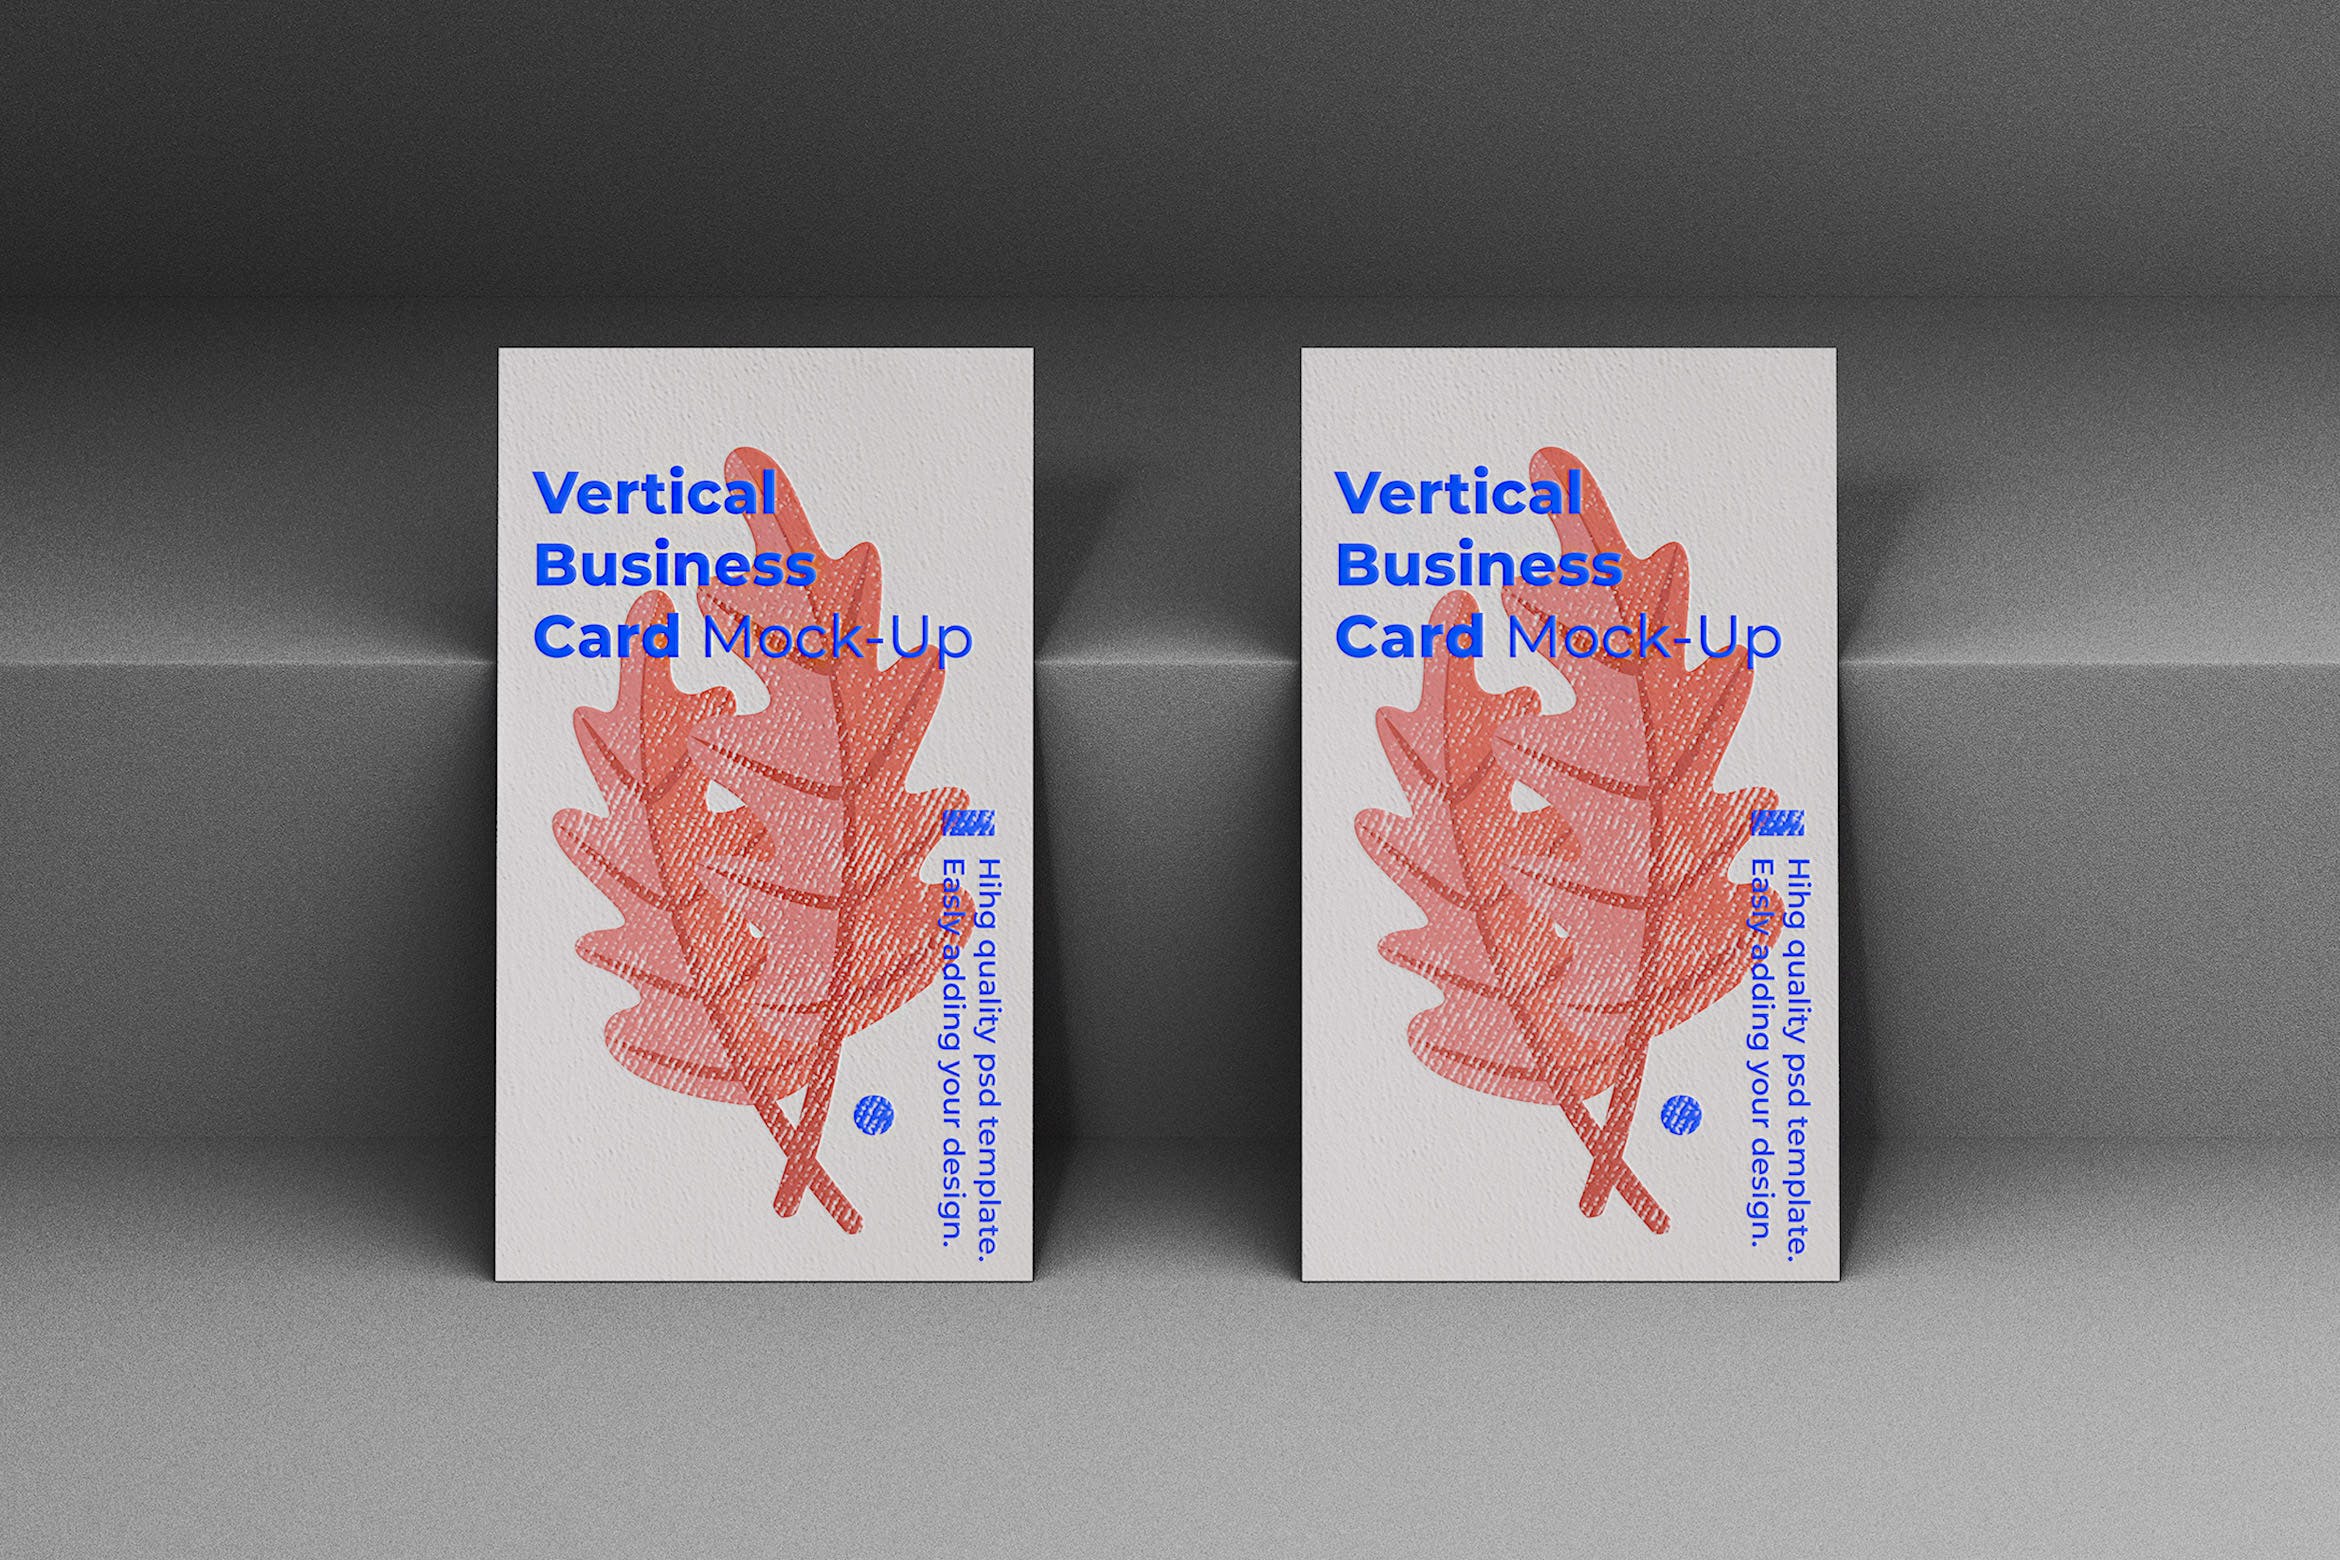 竖版企业名片设计立面效果图第一素材精选模板 Vertical Business Card Mock-Up Template插图